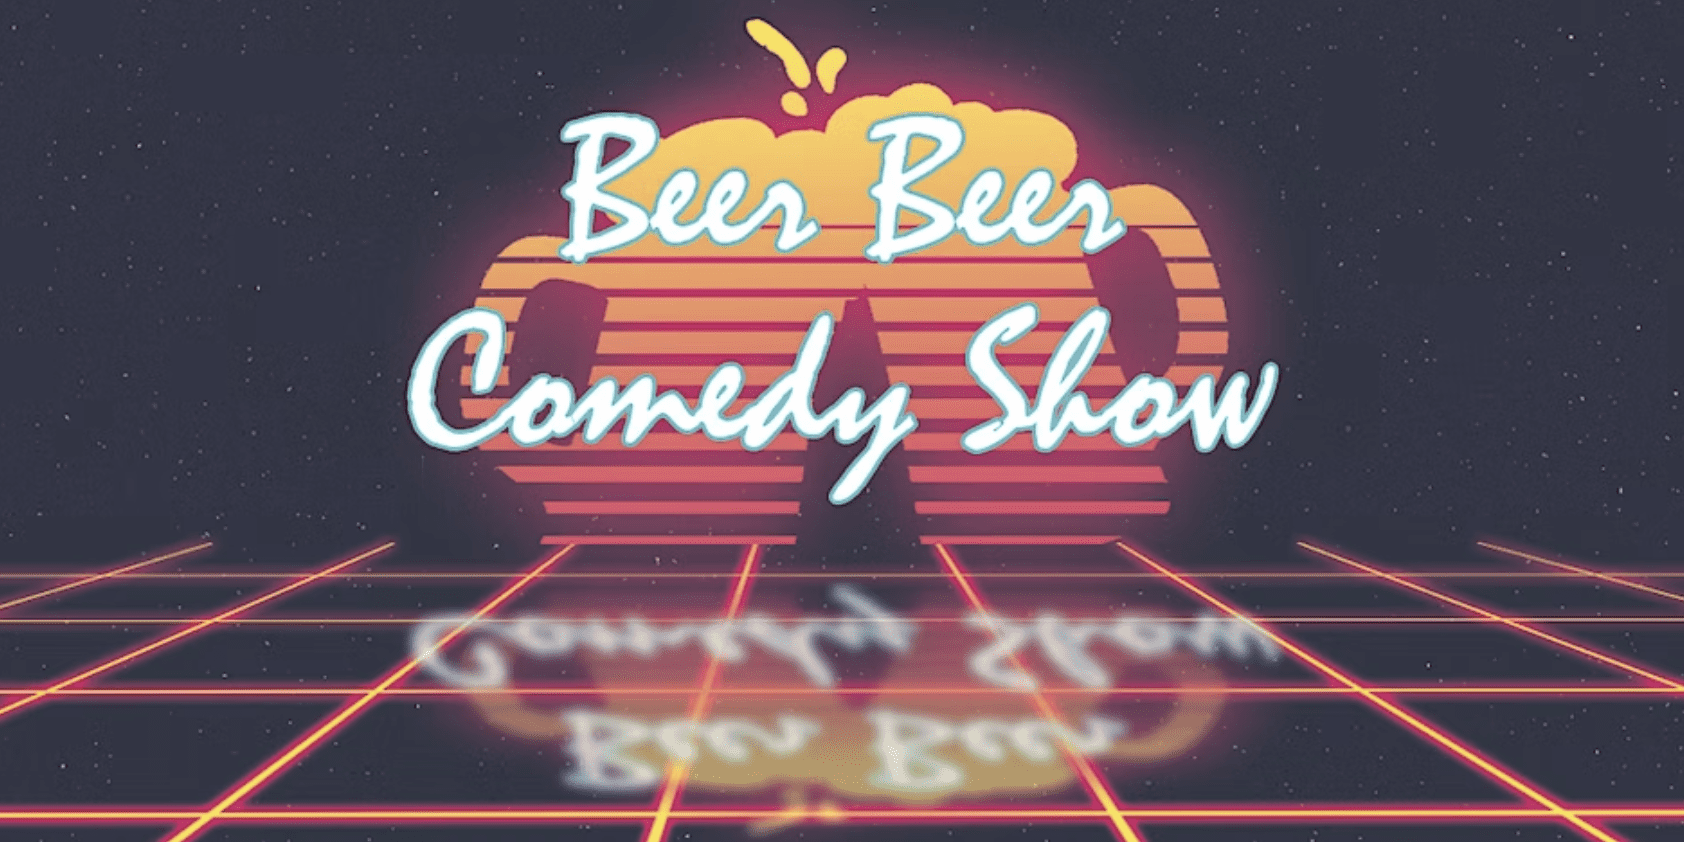 Beer Beer Comedy Poster